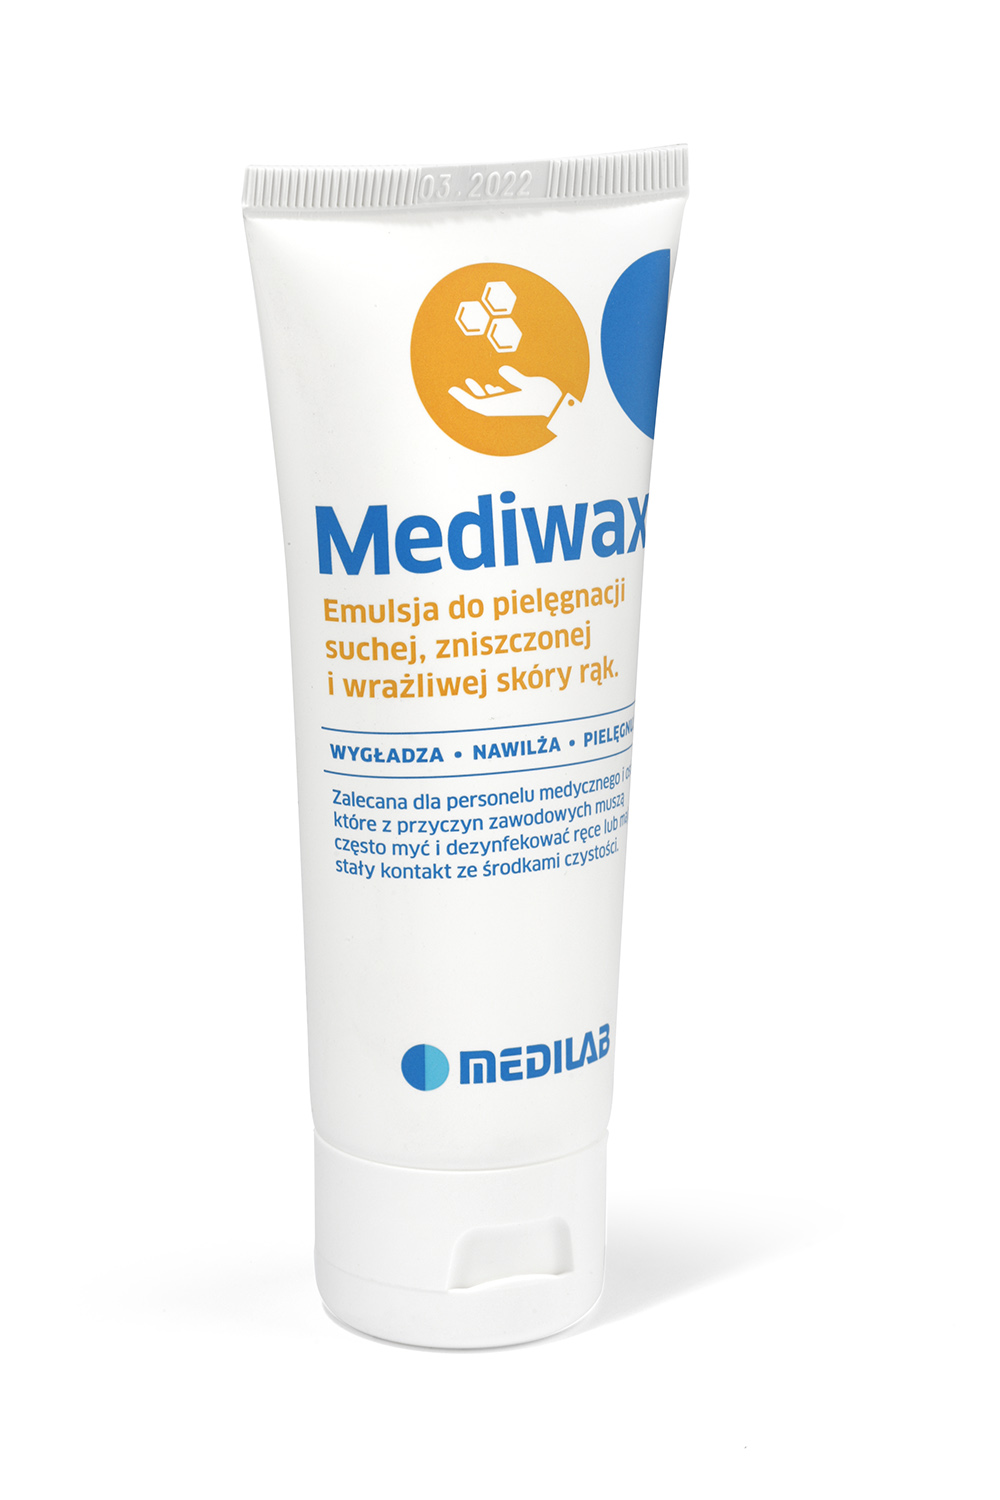 Emulsja na bazie wosku pszczelego Mediwax 75 ml (tuba)